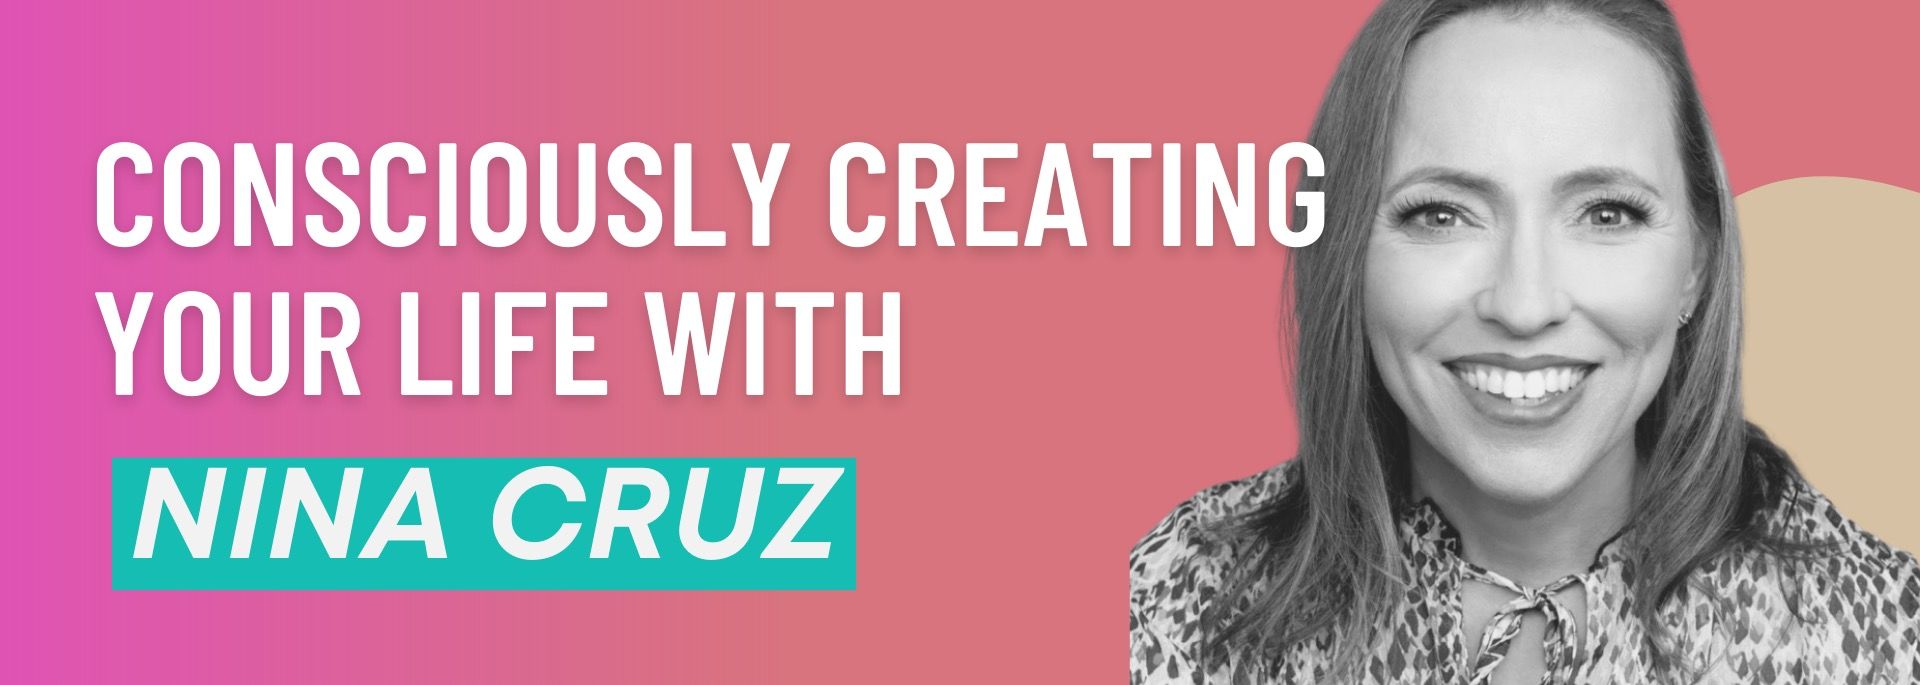 Consciously Creating Your Life with Nina Cruz